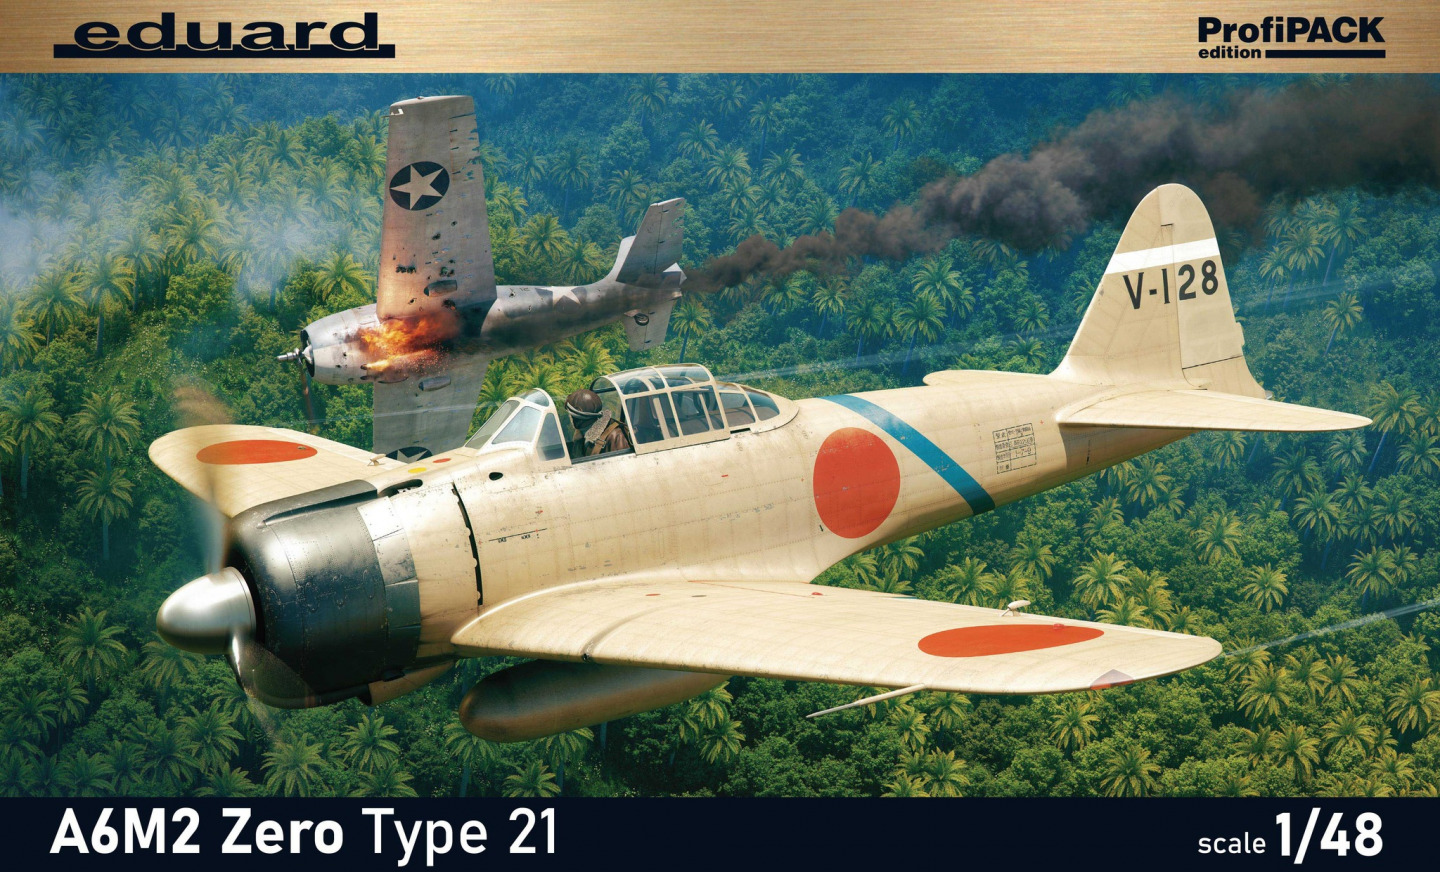 Model kit 1/48 Mitsubishi A6M2 Zero Type 21 ProfiPACK (Eduard kits)